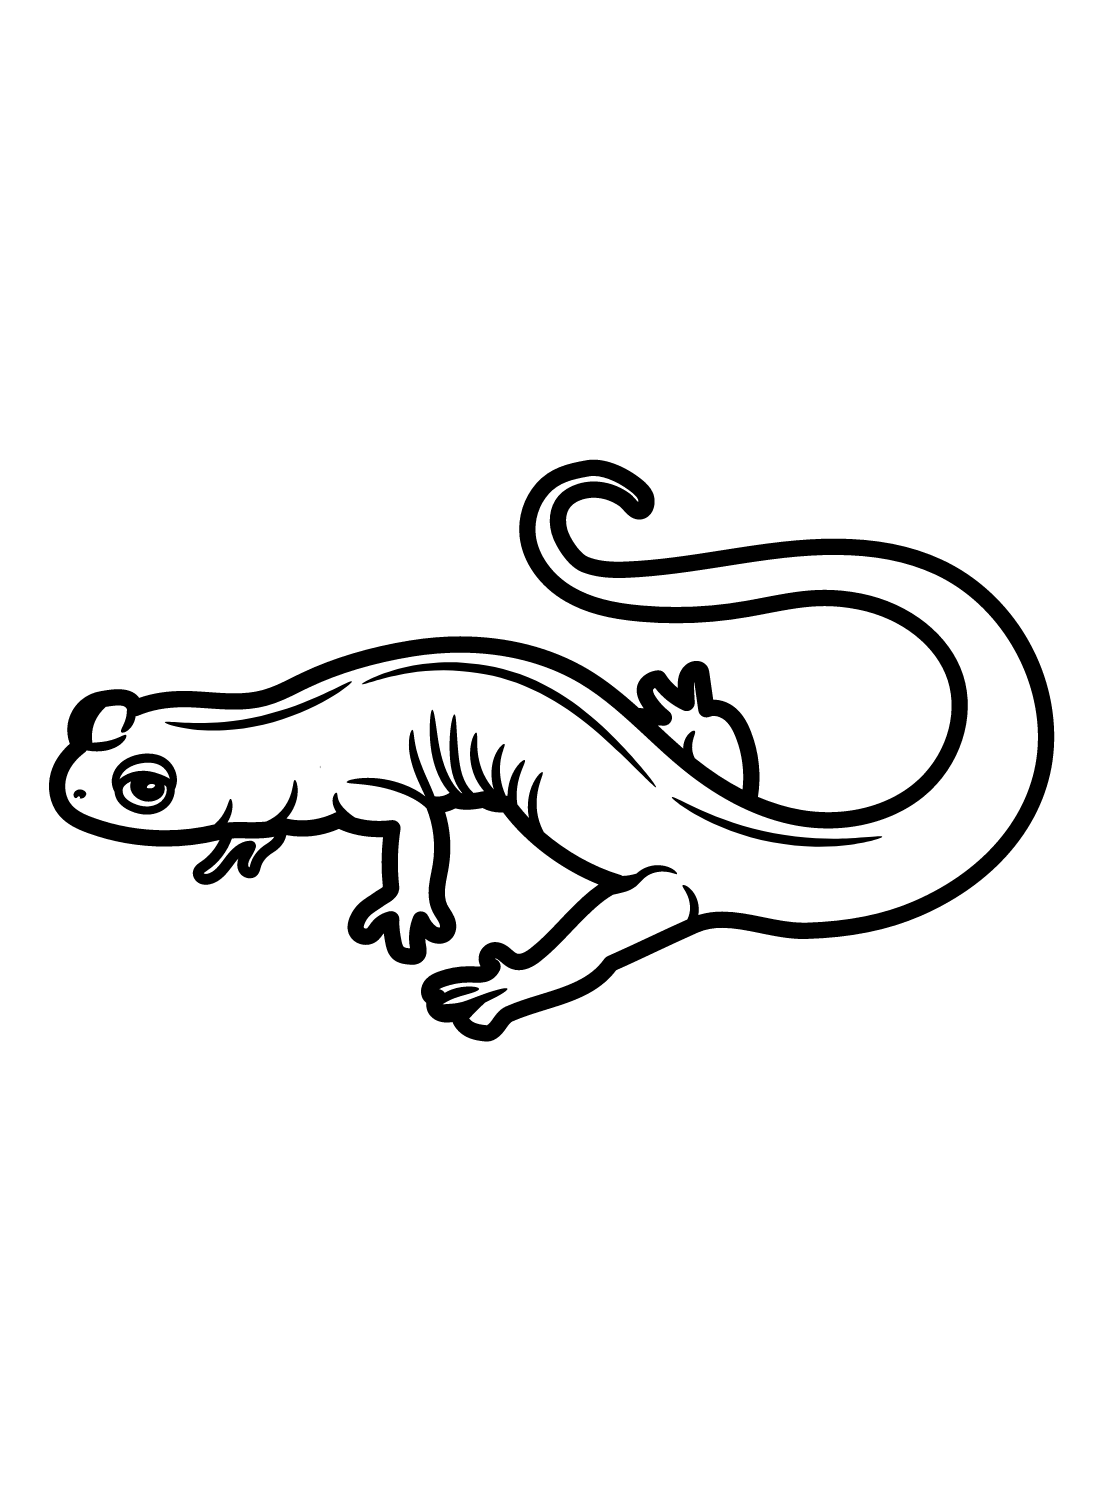 Gray Cheeked Salamander Coloring Page